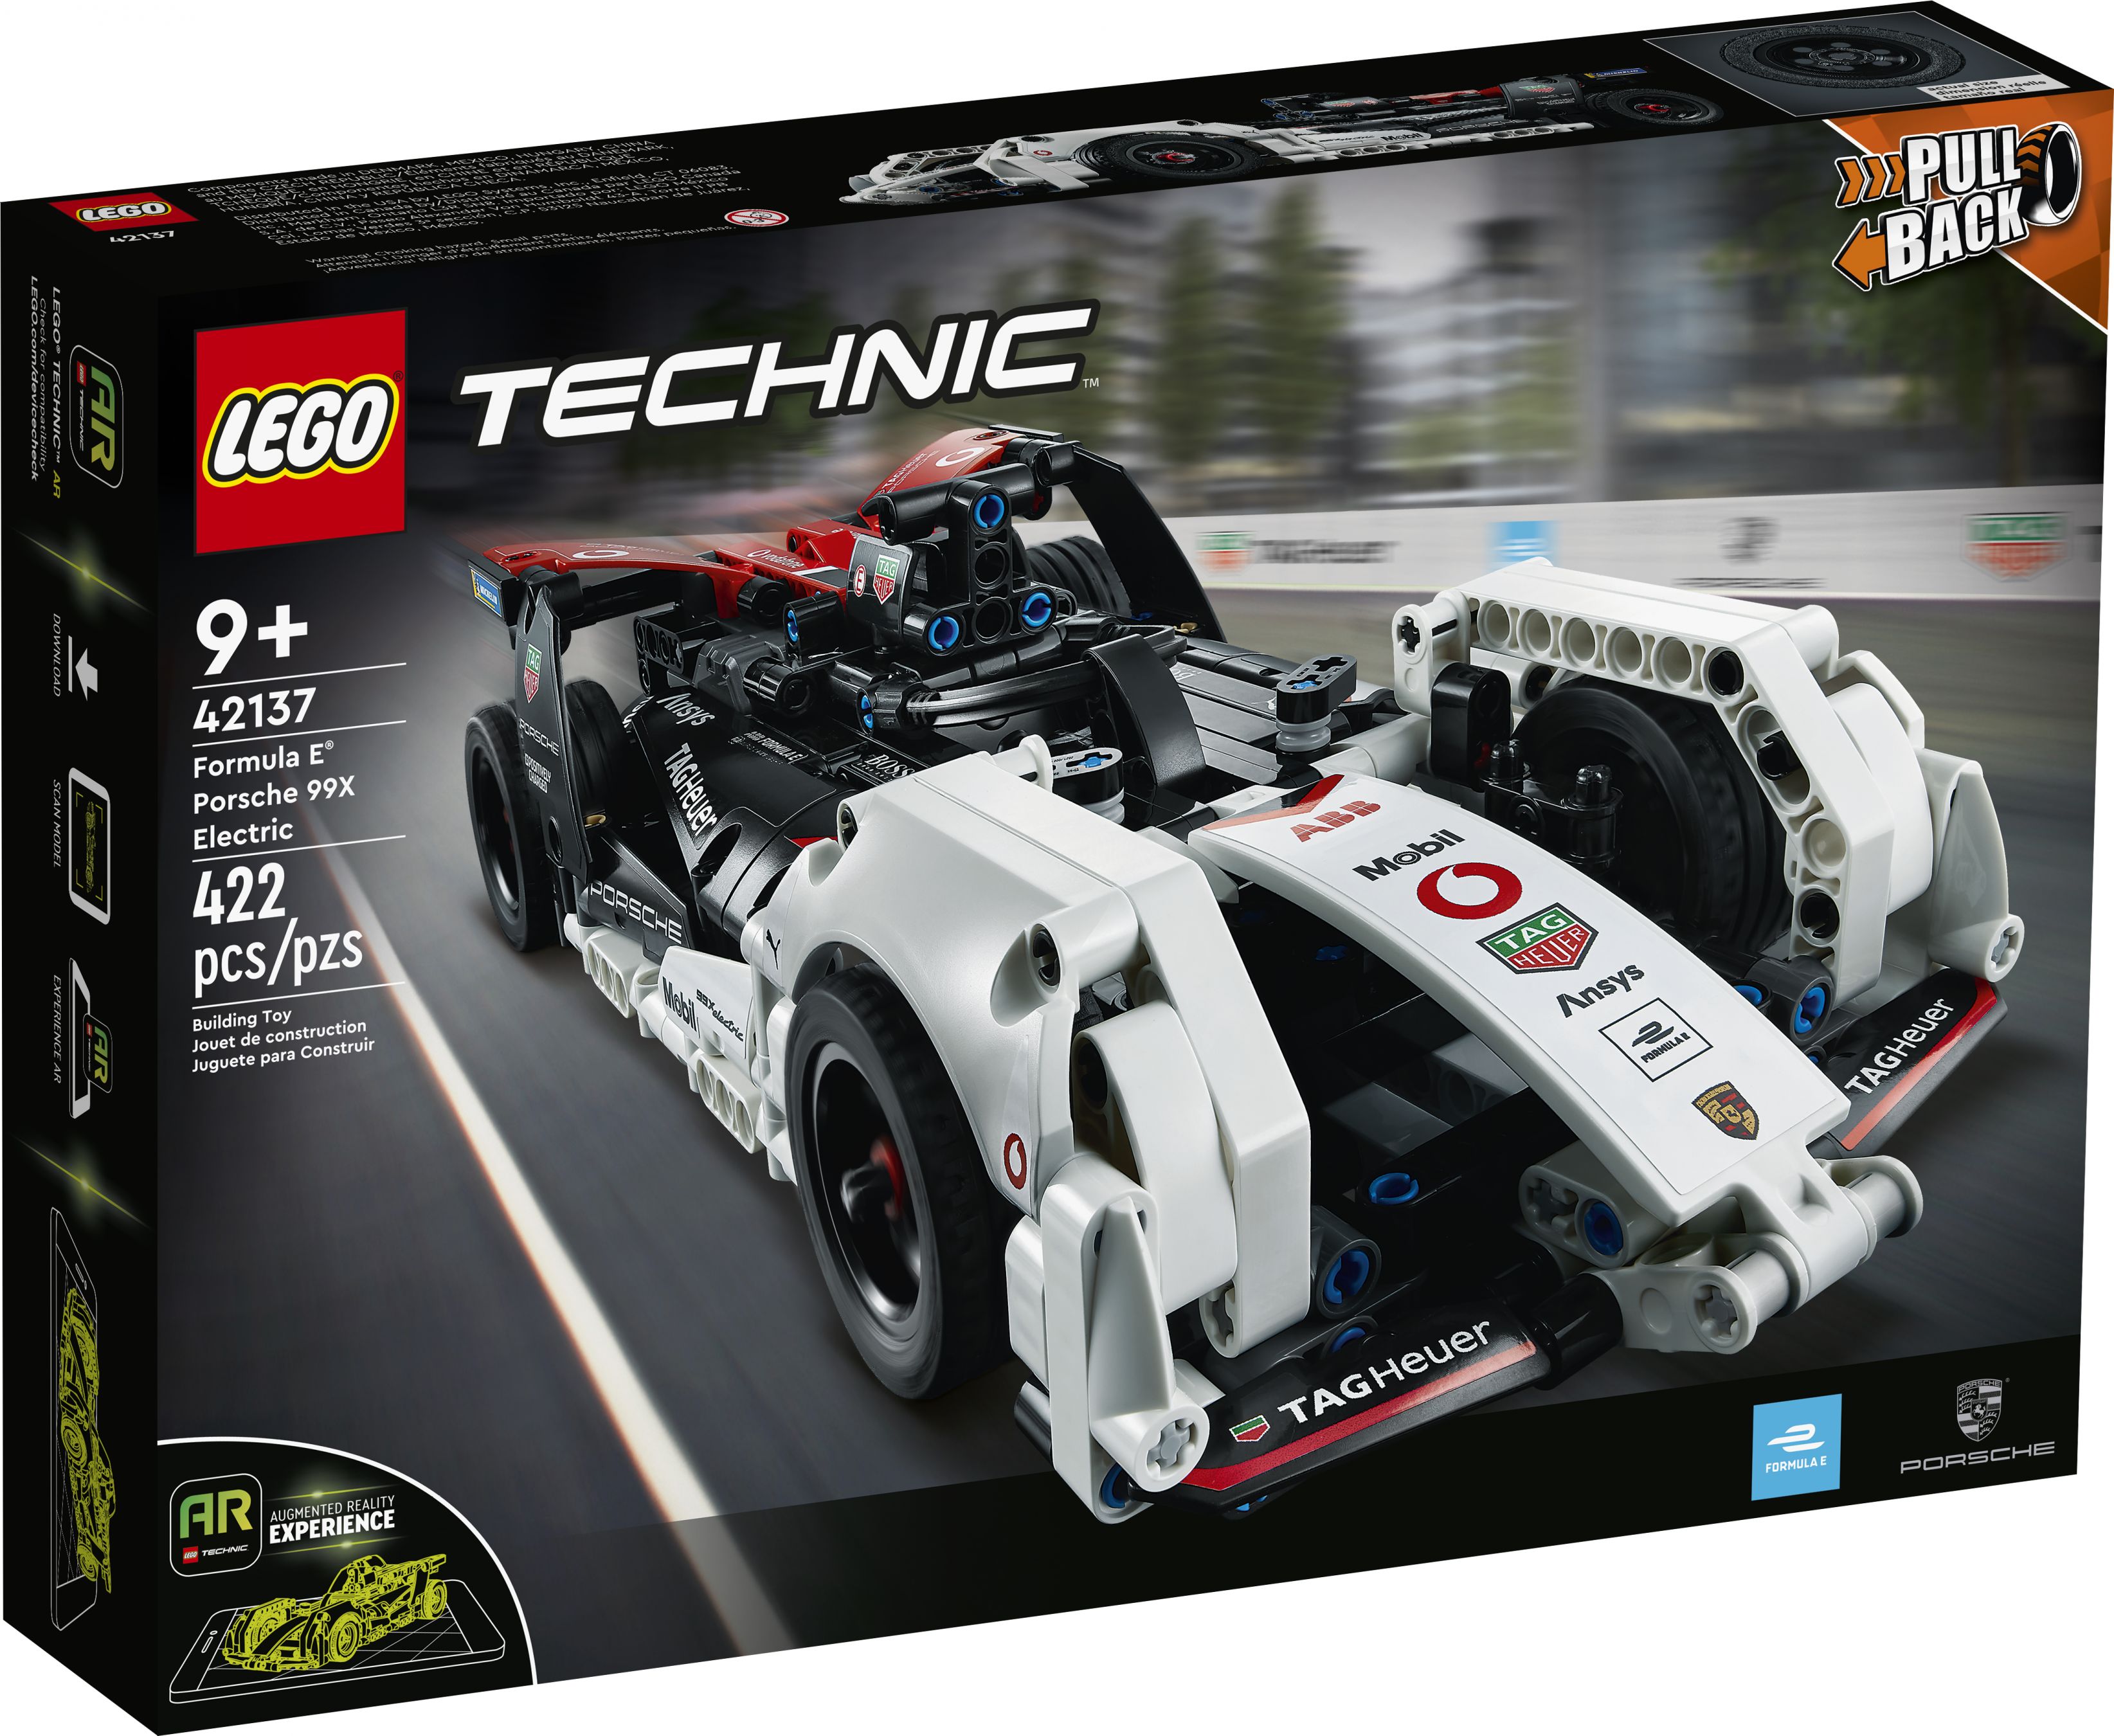 LEGO Technic 42137 Formula E® Porsche 99X Electric LEGO_42137_Box1_v39.jpg